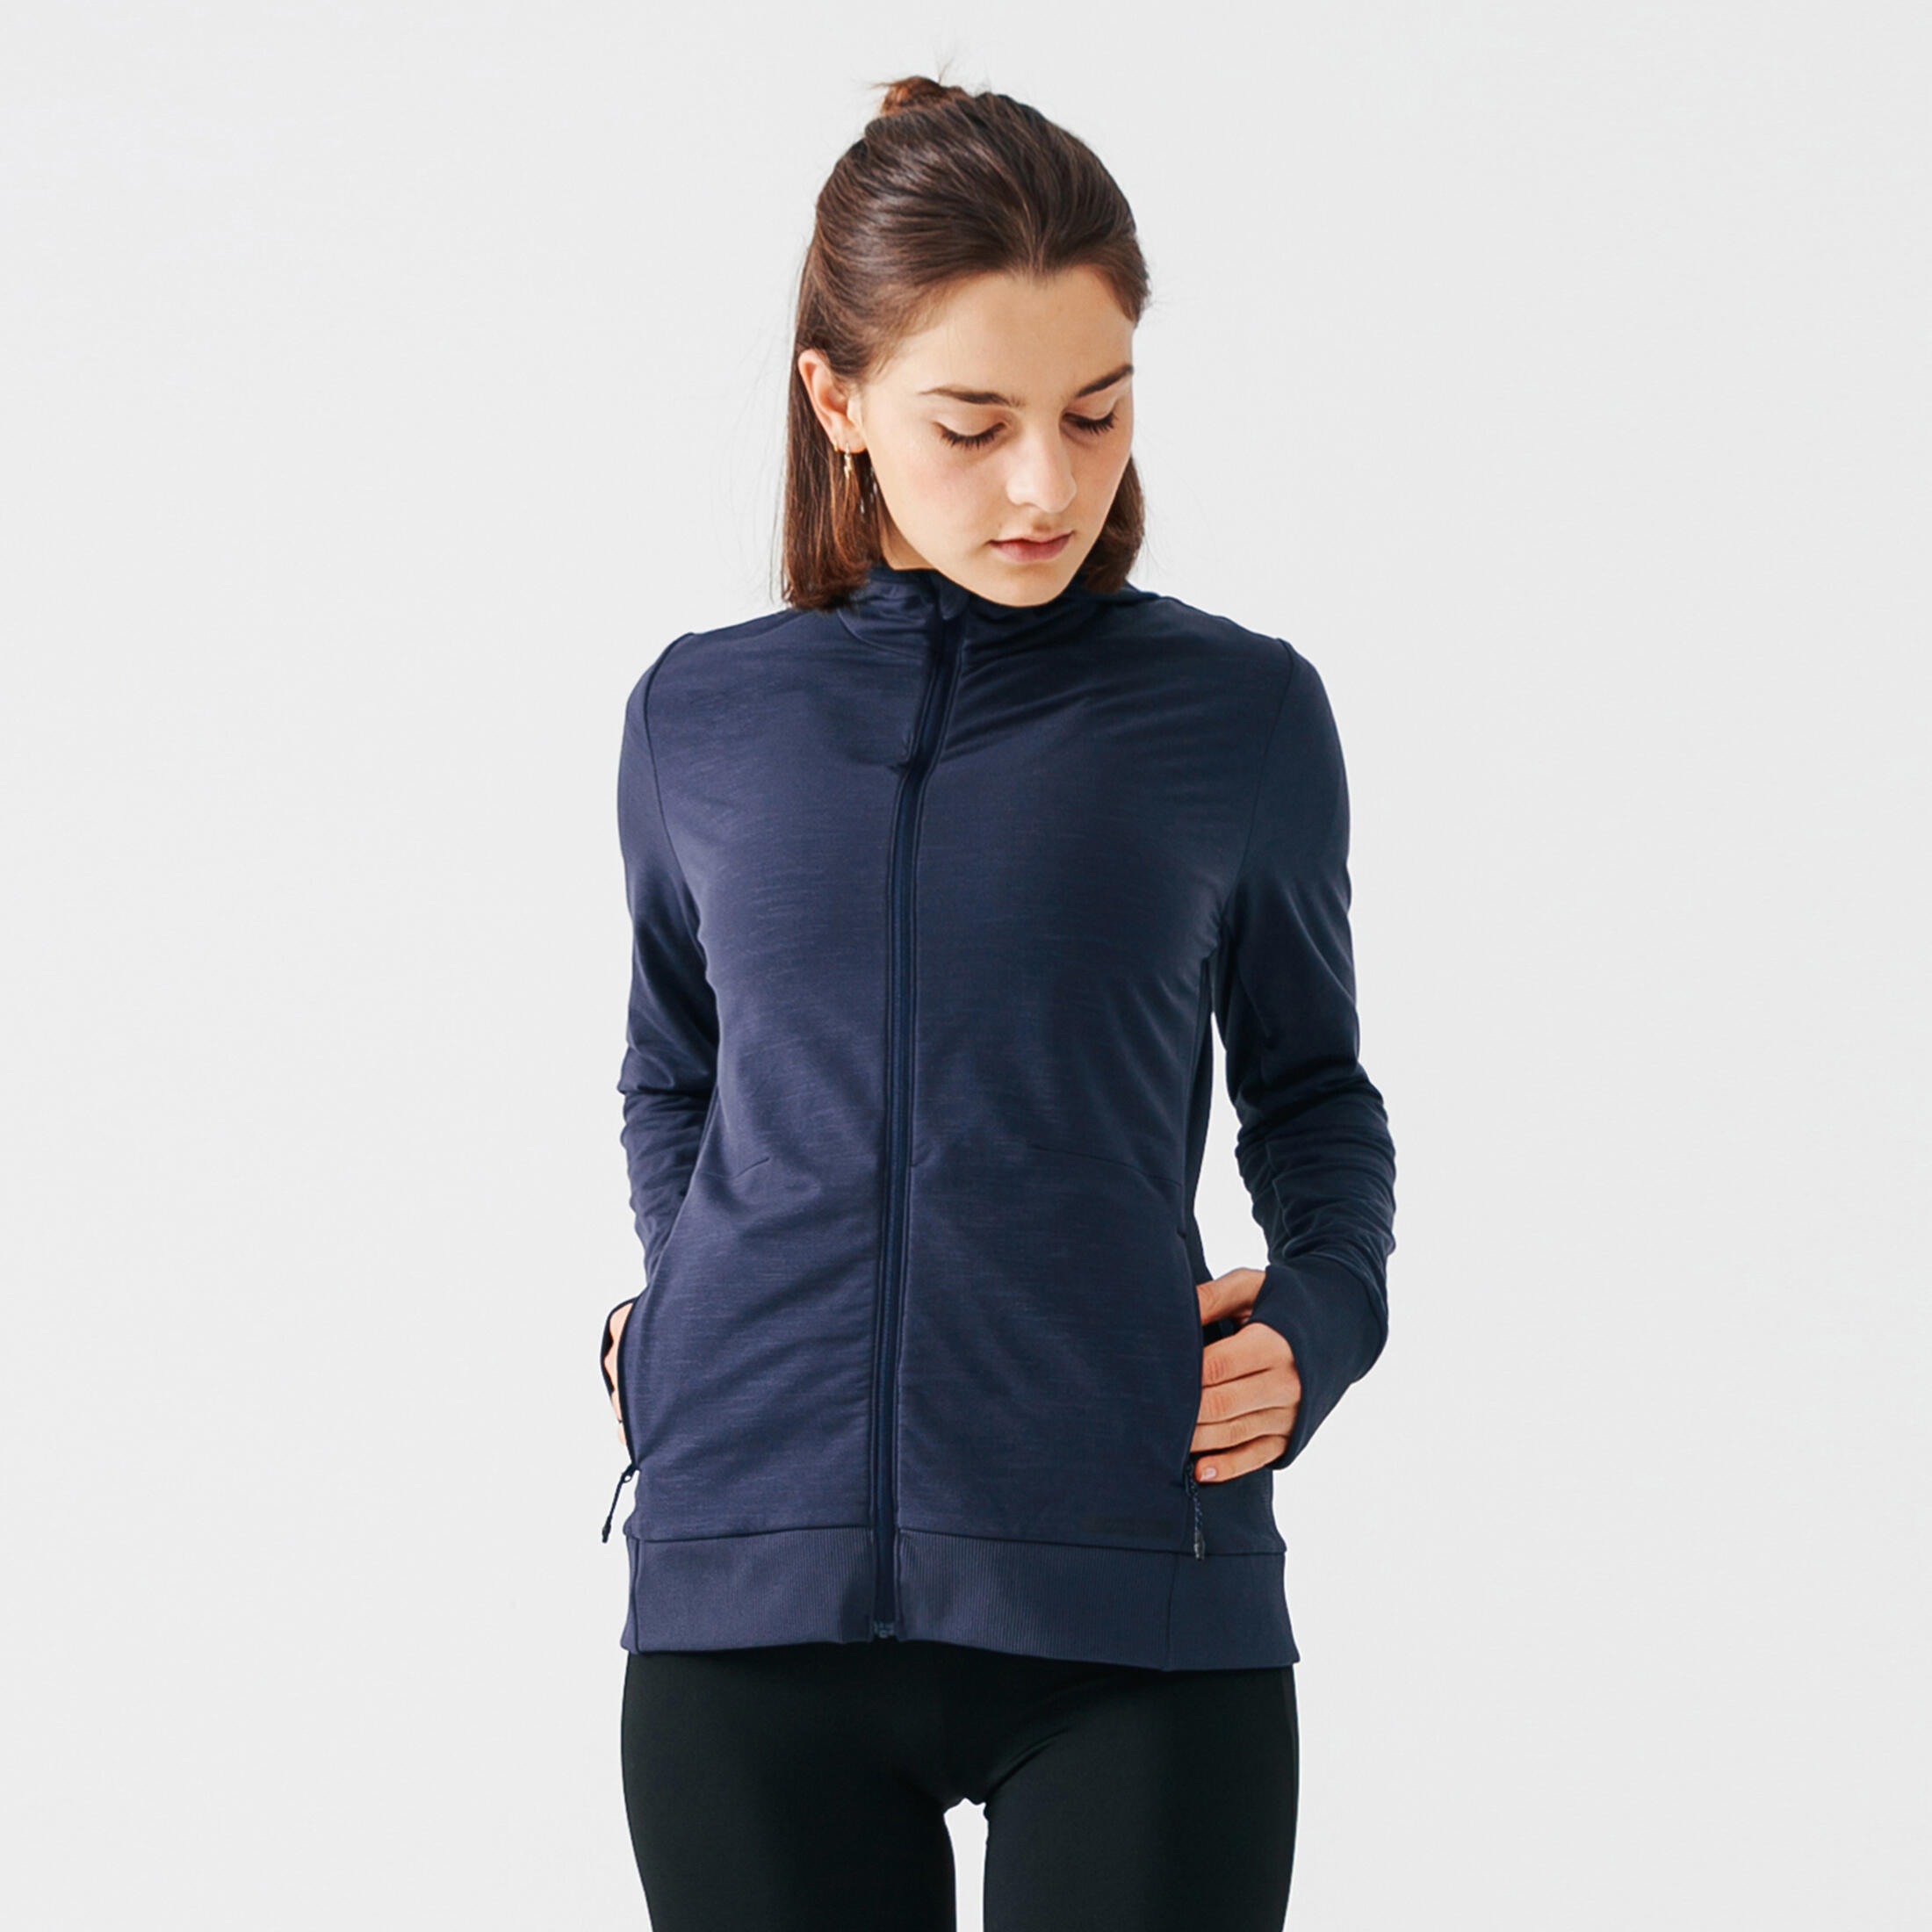 Women's Running Hooded Jacket Warm - dark blue 1/9